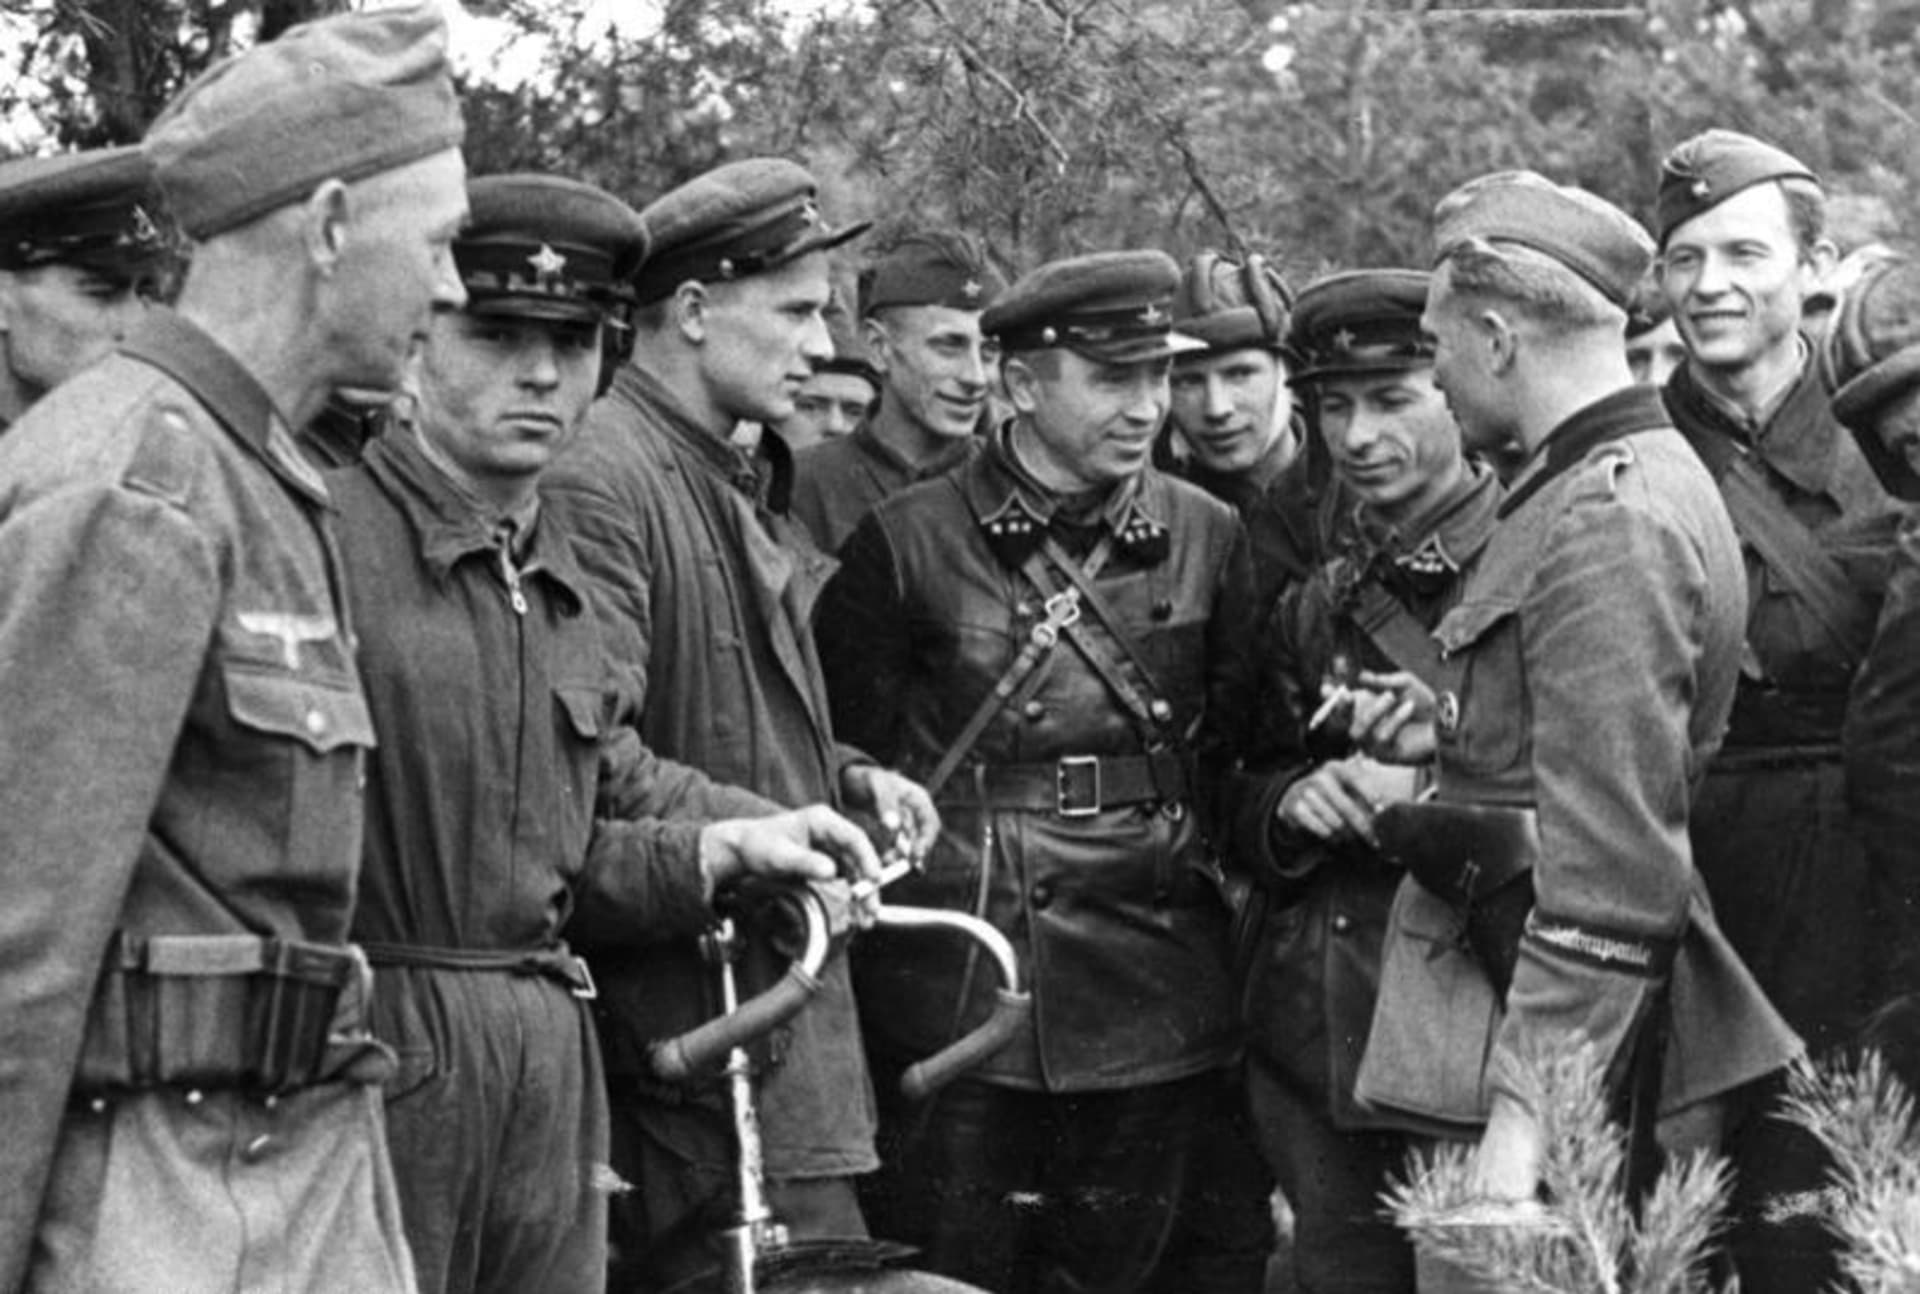 Setkání německých a polských jednotek při přepadení Polska